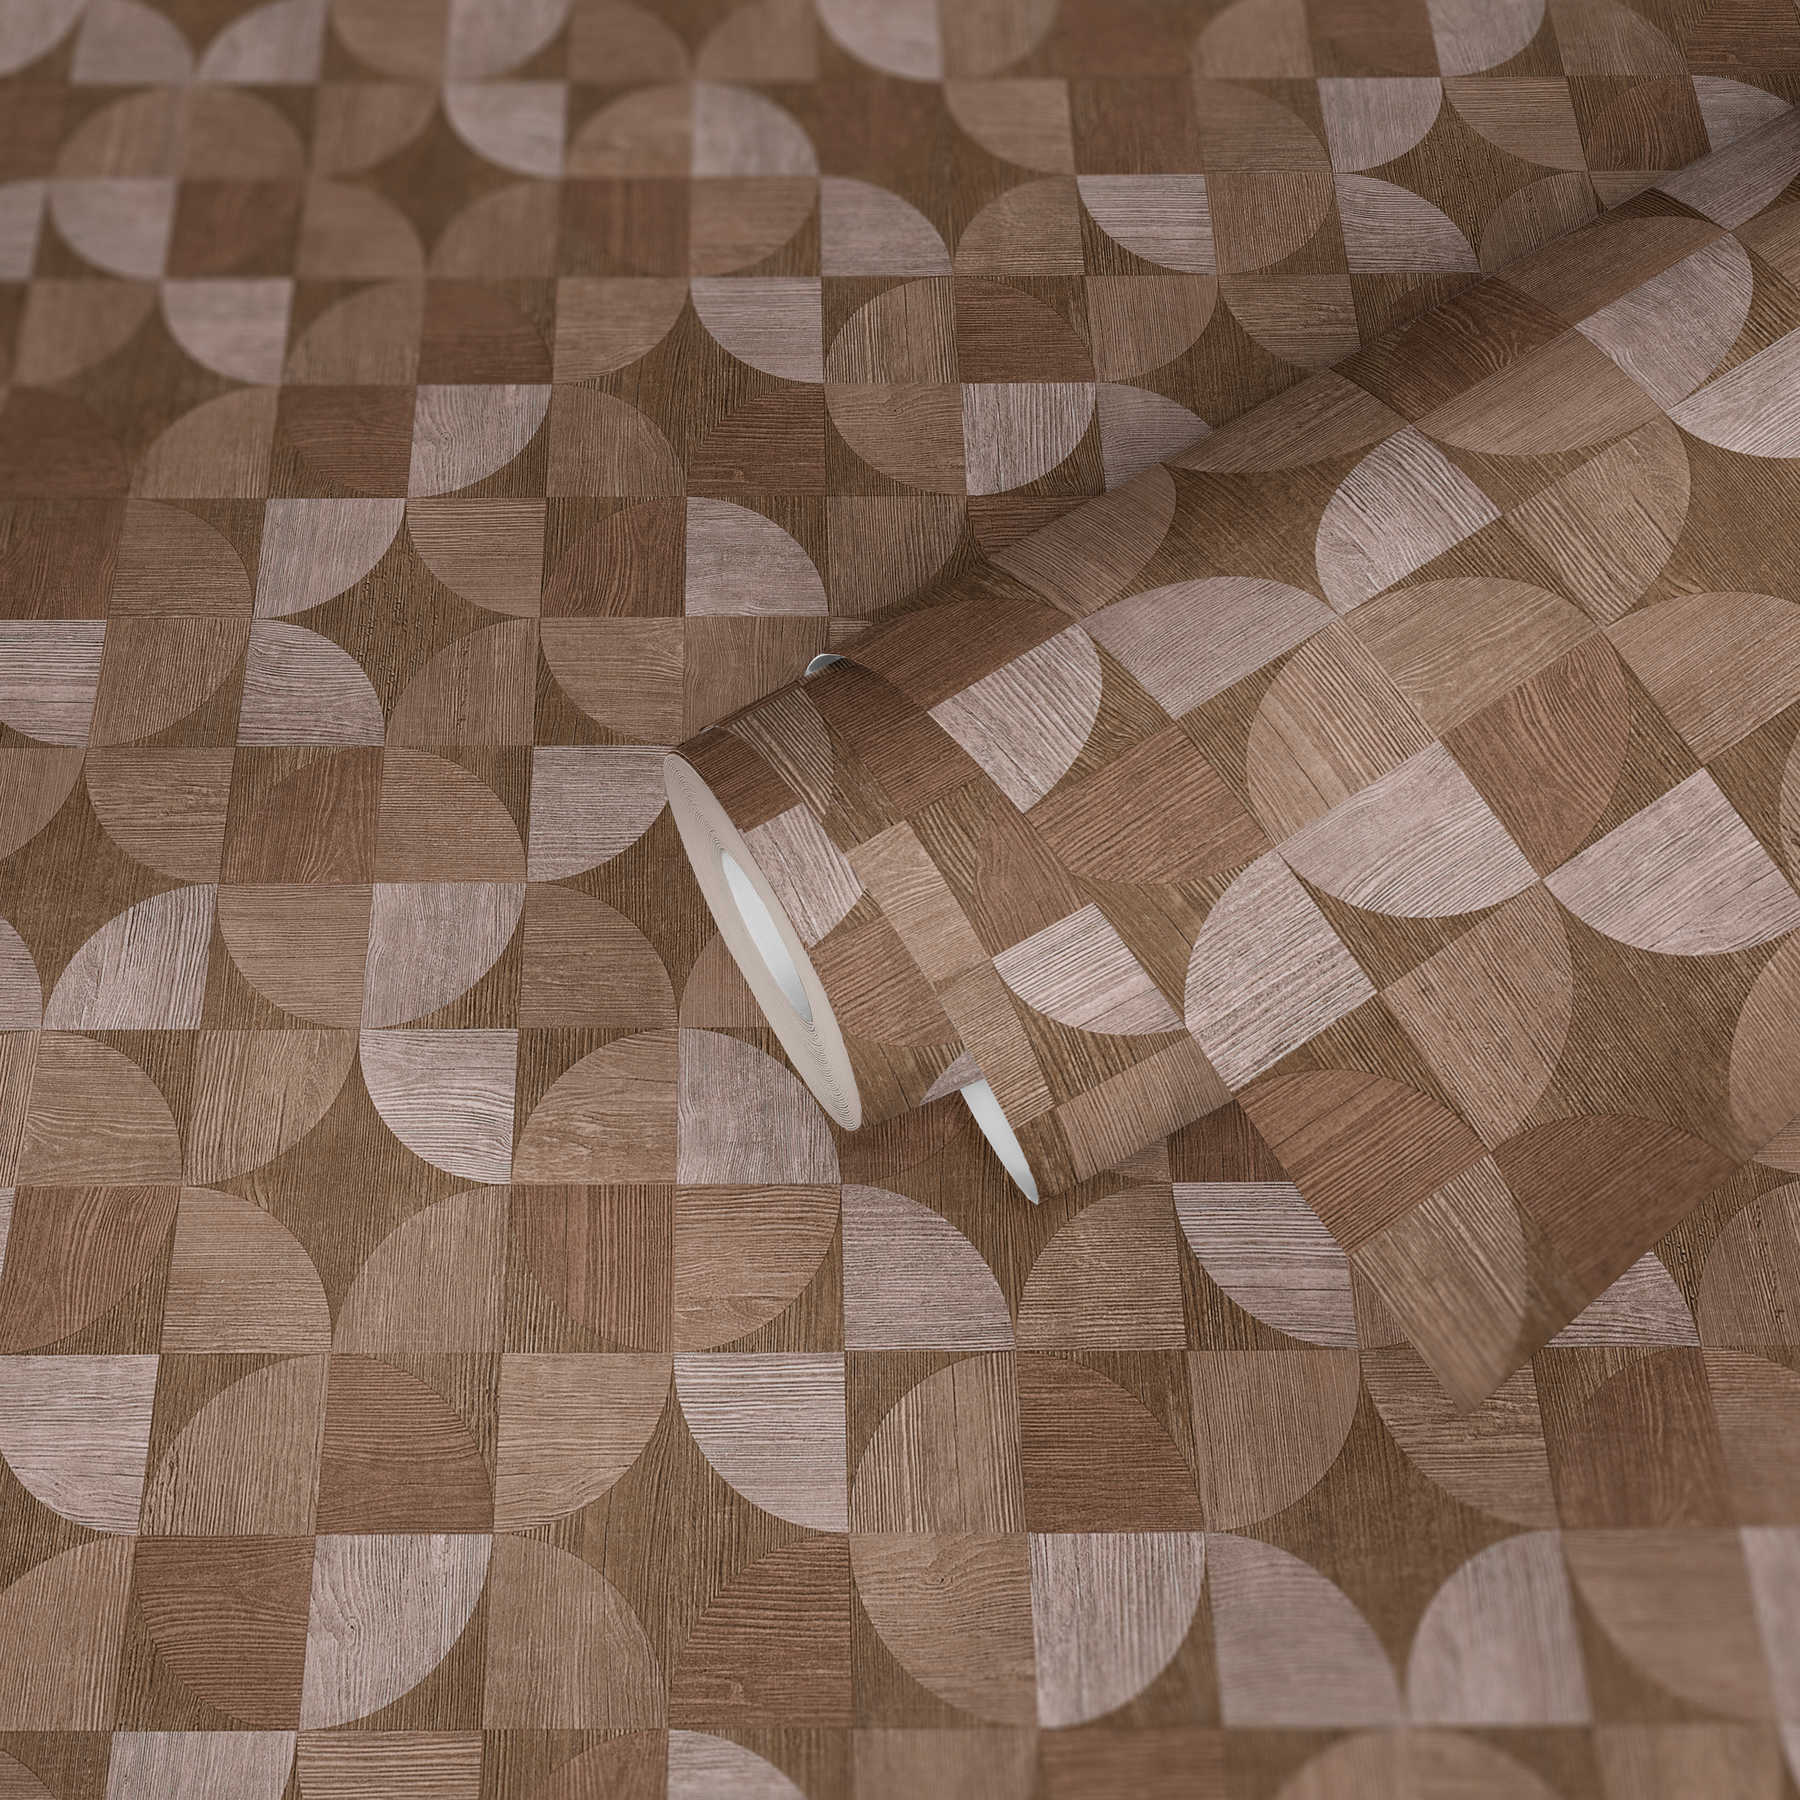             Tapete mit grafischem Muster in Holzoptik – Braun, Beige
        